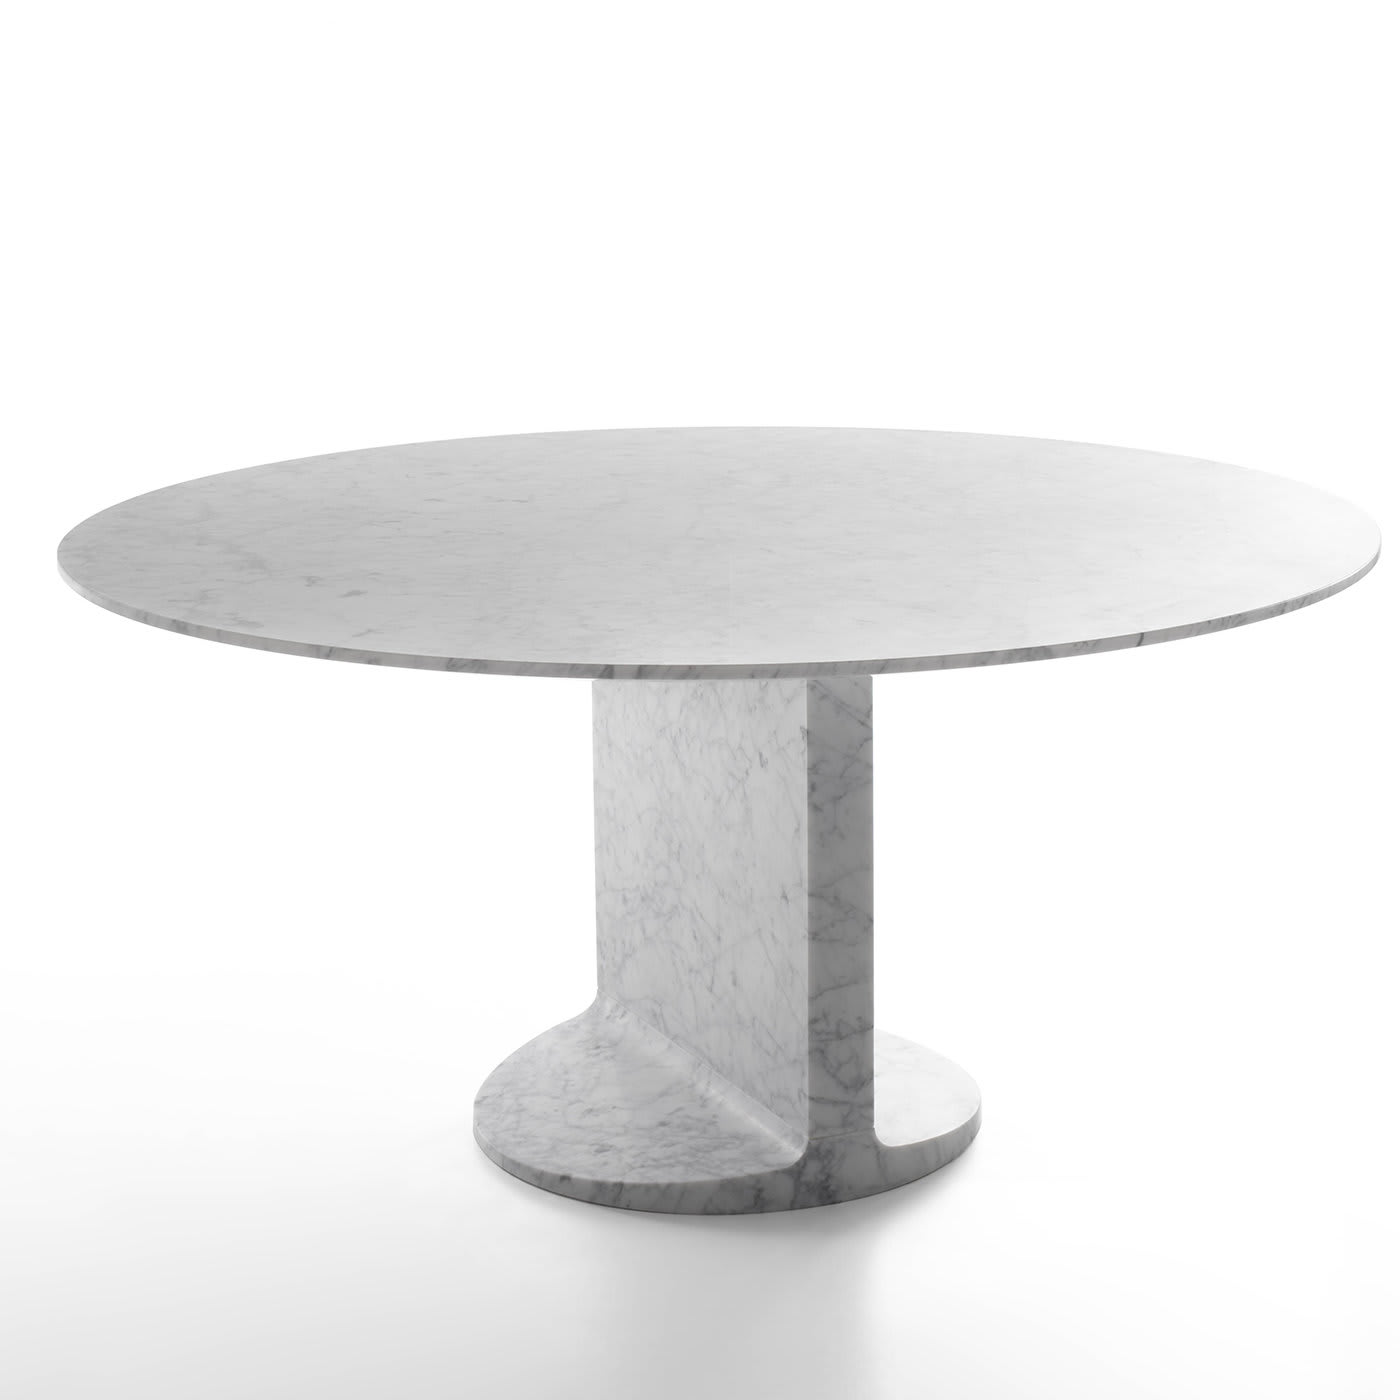 MIMMO DINING TABLE - Design James Irvine 2010 - Marsotto Edizioni